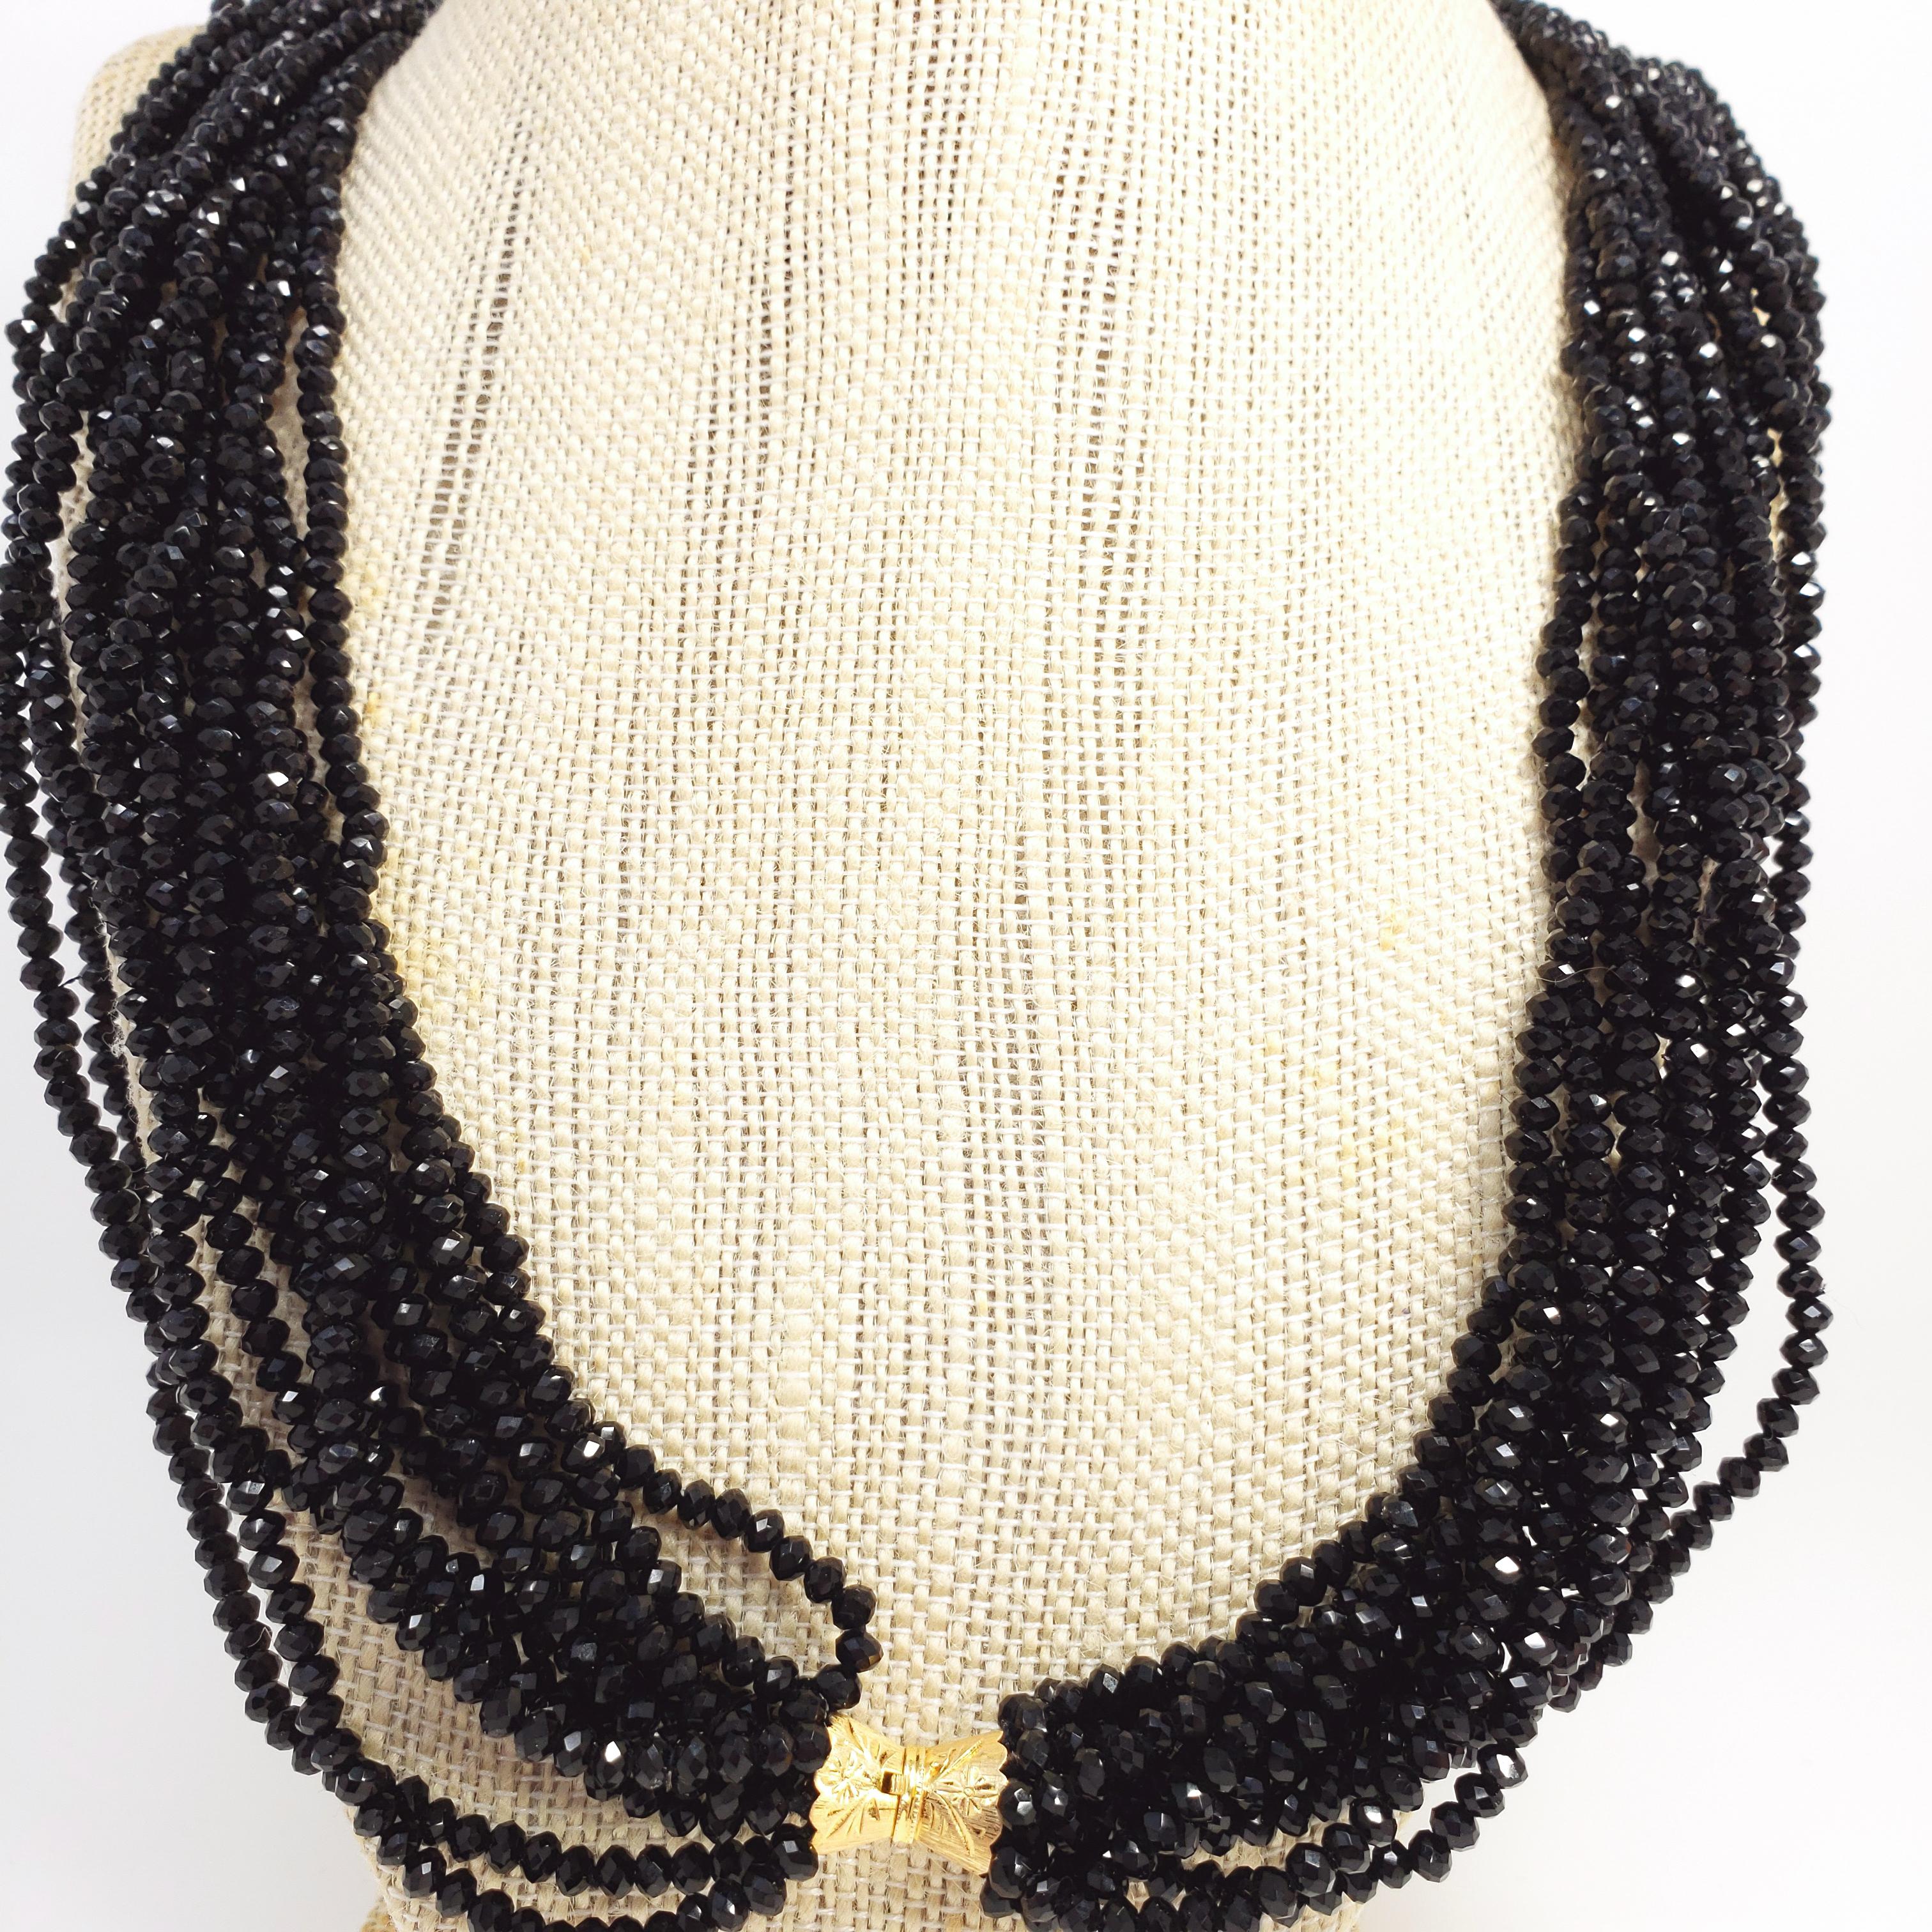 Diese elegante Halskette besteht aus 12 Strängen funkelnder schwarzer Glasspinellperlen, die mit einem Verschluss aus 14-karätigem Gelbgold verbunden sind. Ein luxuriöses Accessoire!

Punzierungen: 14K, 585
Stilisierter goldener Kastenverschluss,